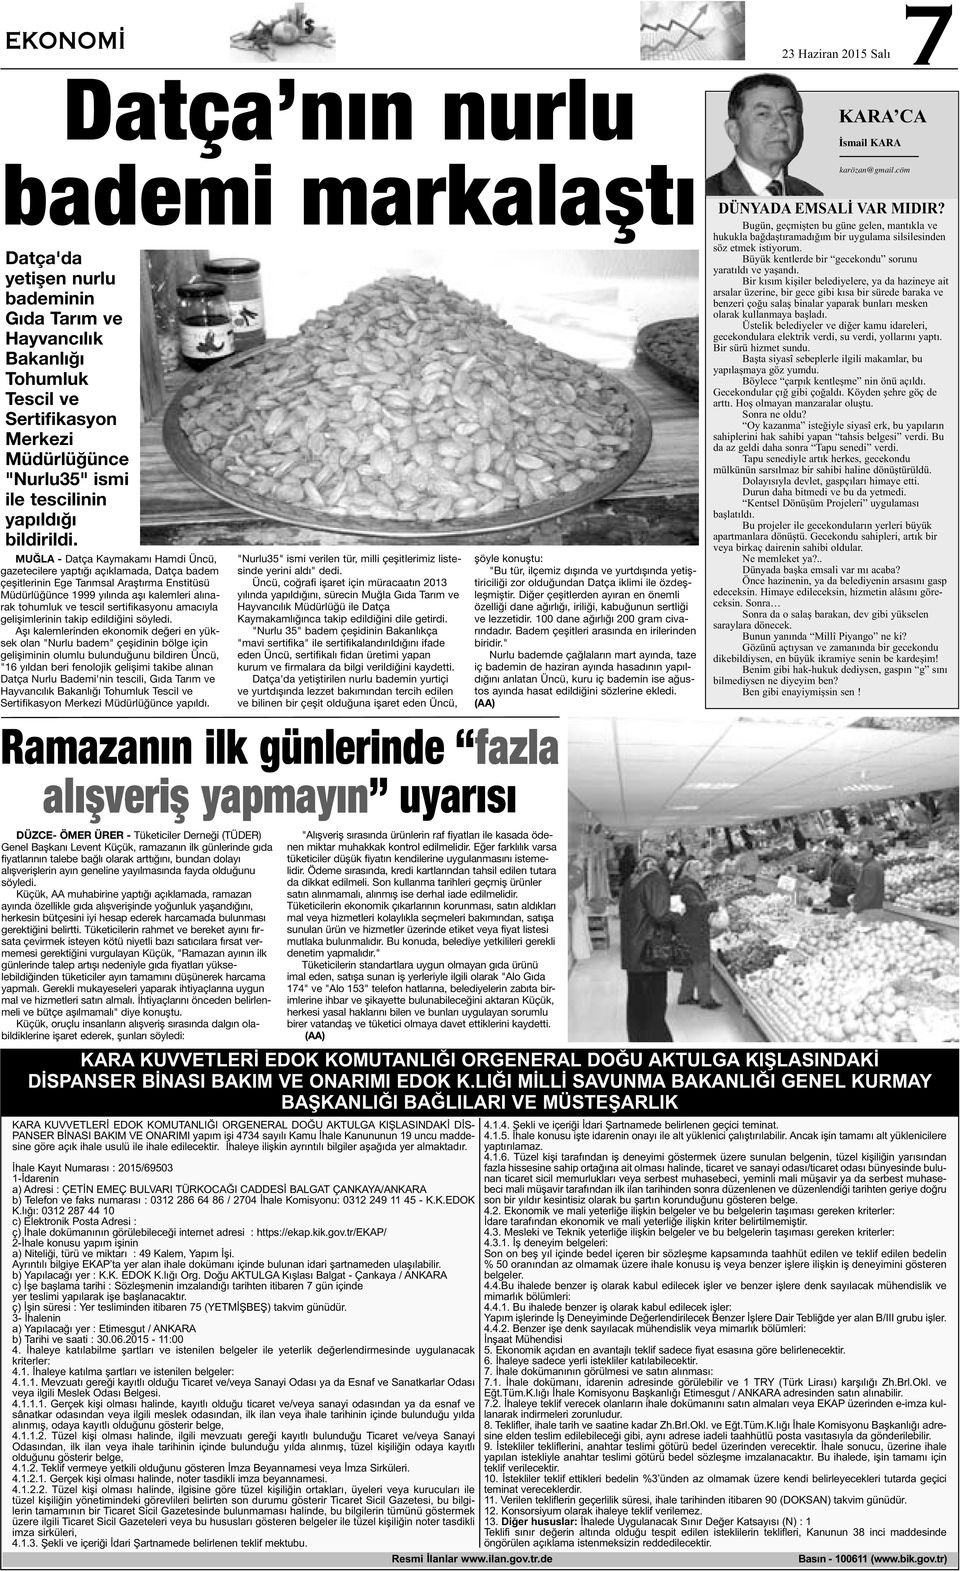 MUĞLA - Datça Kaymakamı Hamdi Üncü, gazetecilere yaptığı açıklamada, Datça badem çeşitlerinin Ege Tarımsal Araştırma Enstitüsü Müdürlüğünce 1999 yılında aşı kalemleri alınarak tohumluk ve tescil